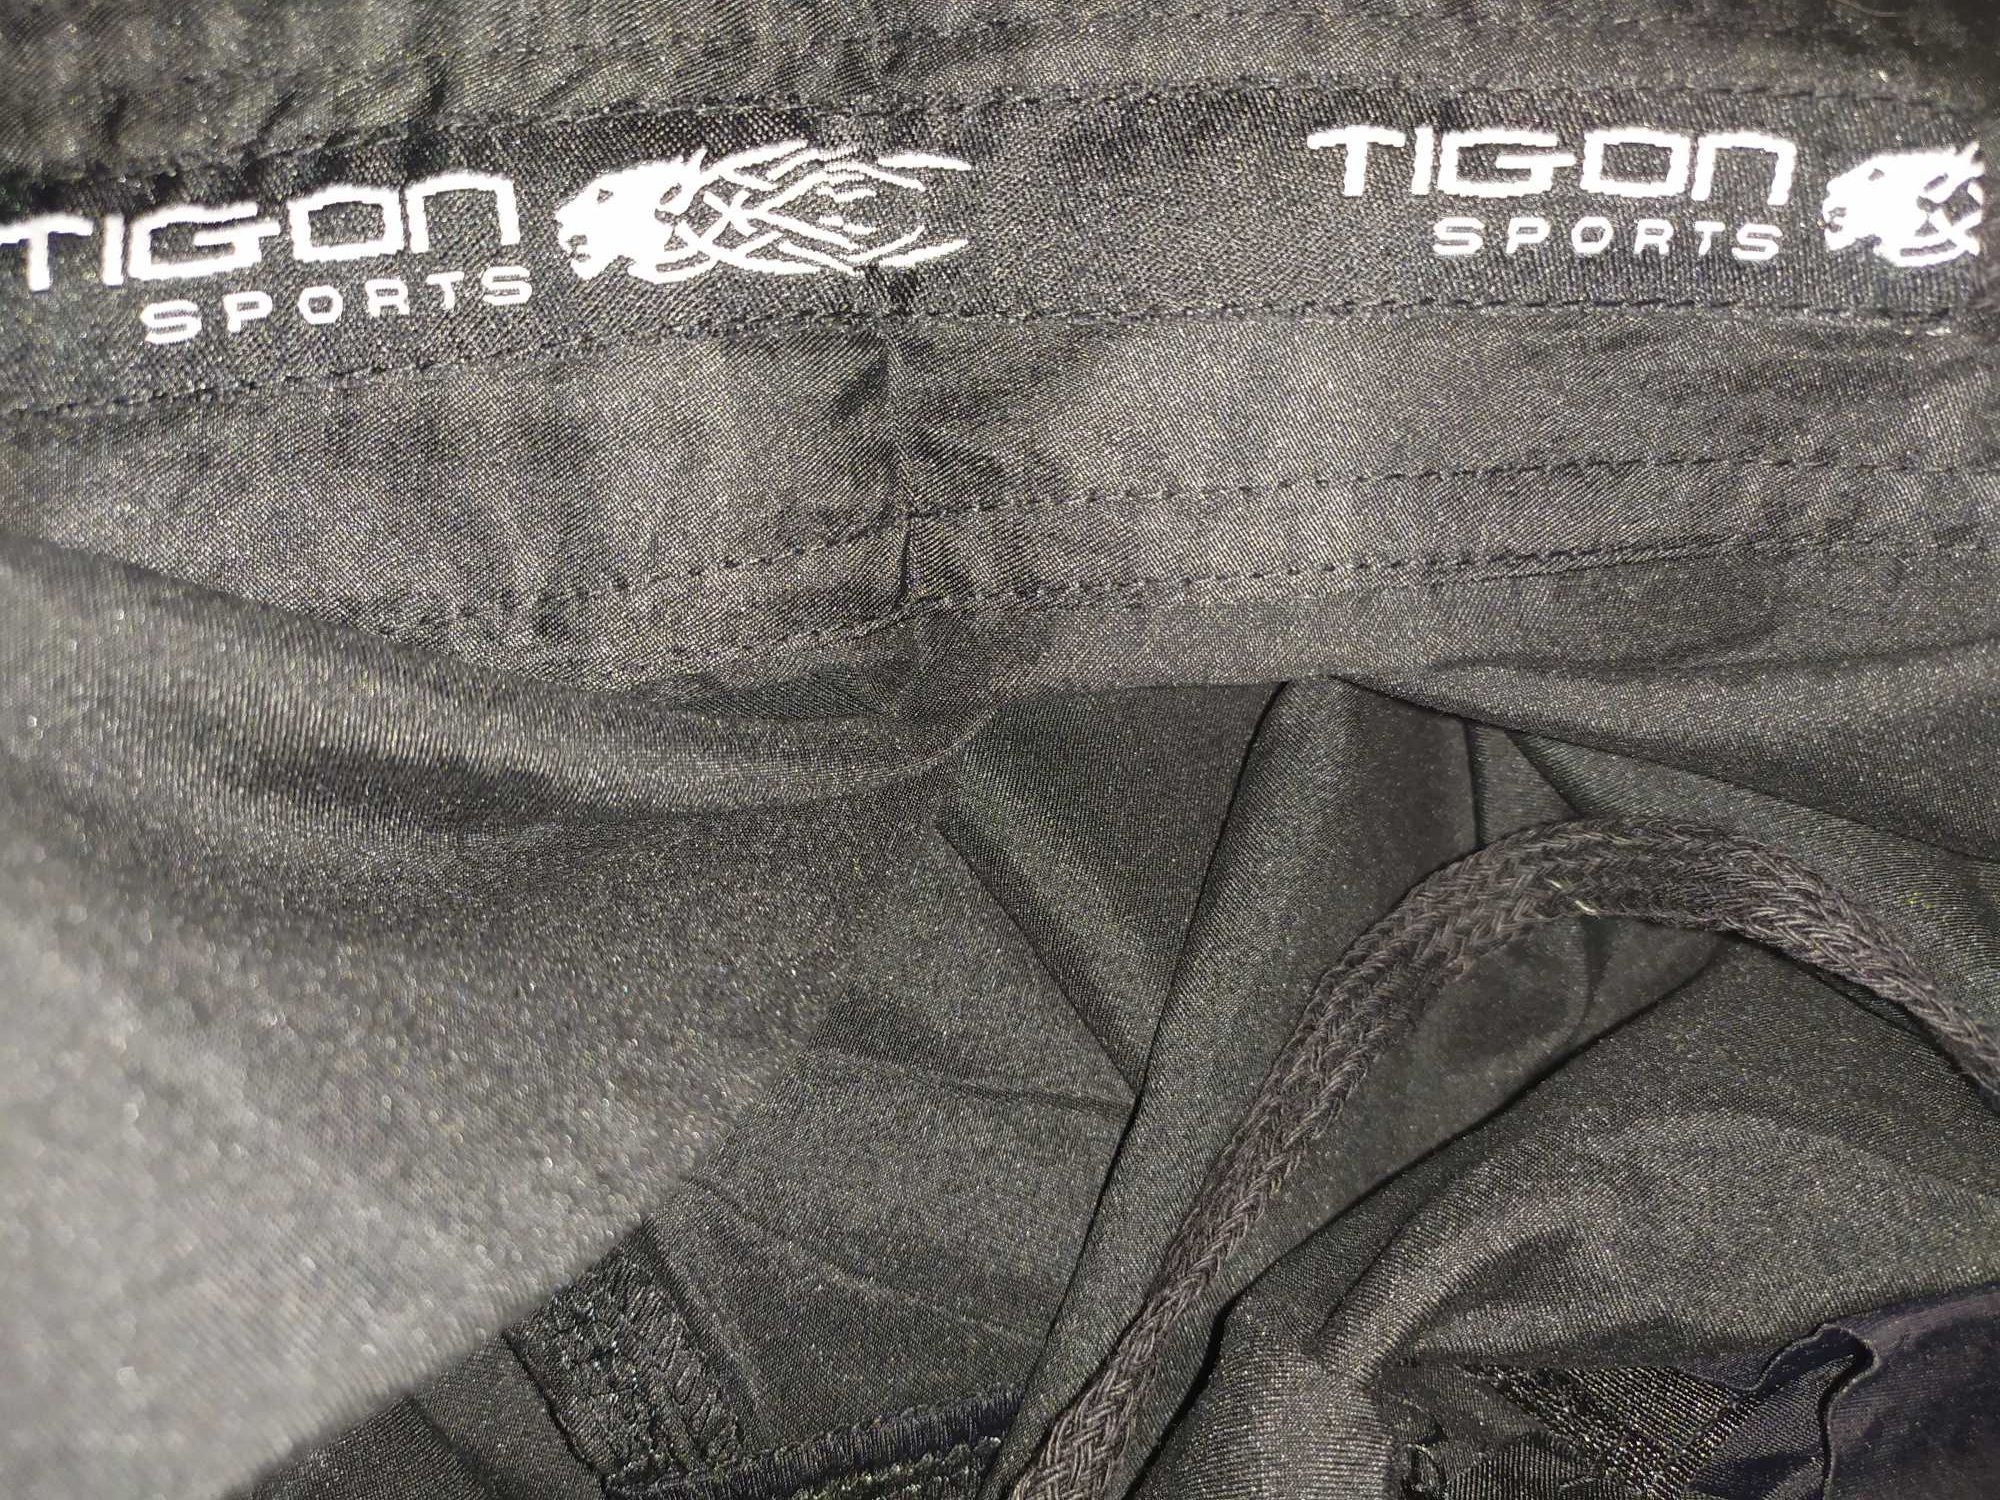 Спортивные трусы/шорты Tigon Sports для ММА, единоборств, кроссфита.